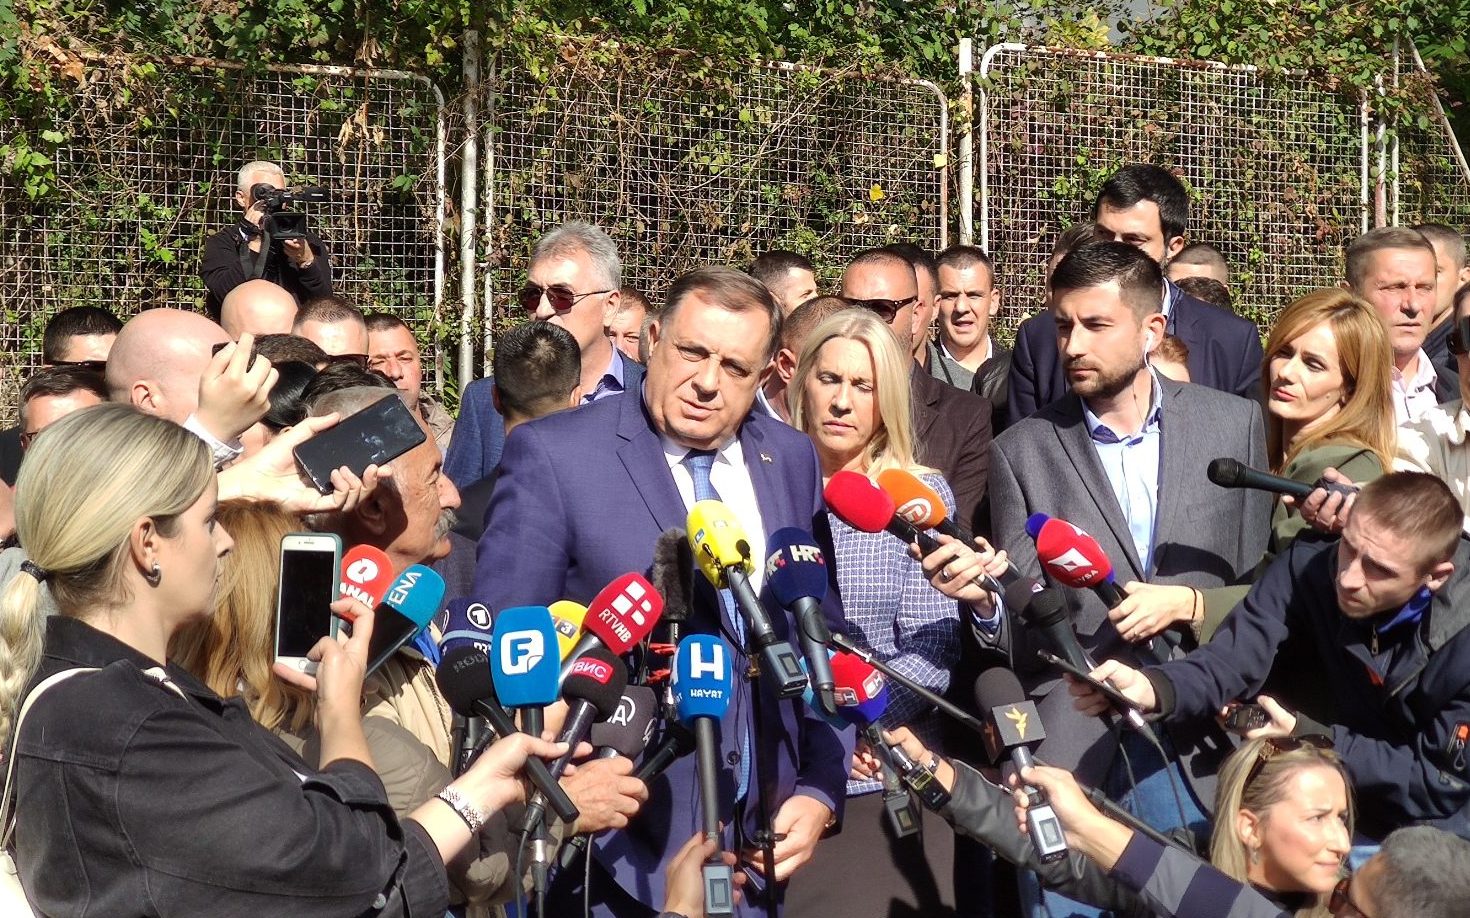 Danas nastavak suđenja Dodiku i Lukiću